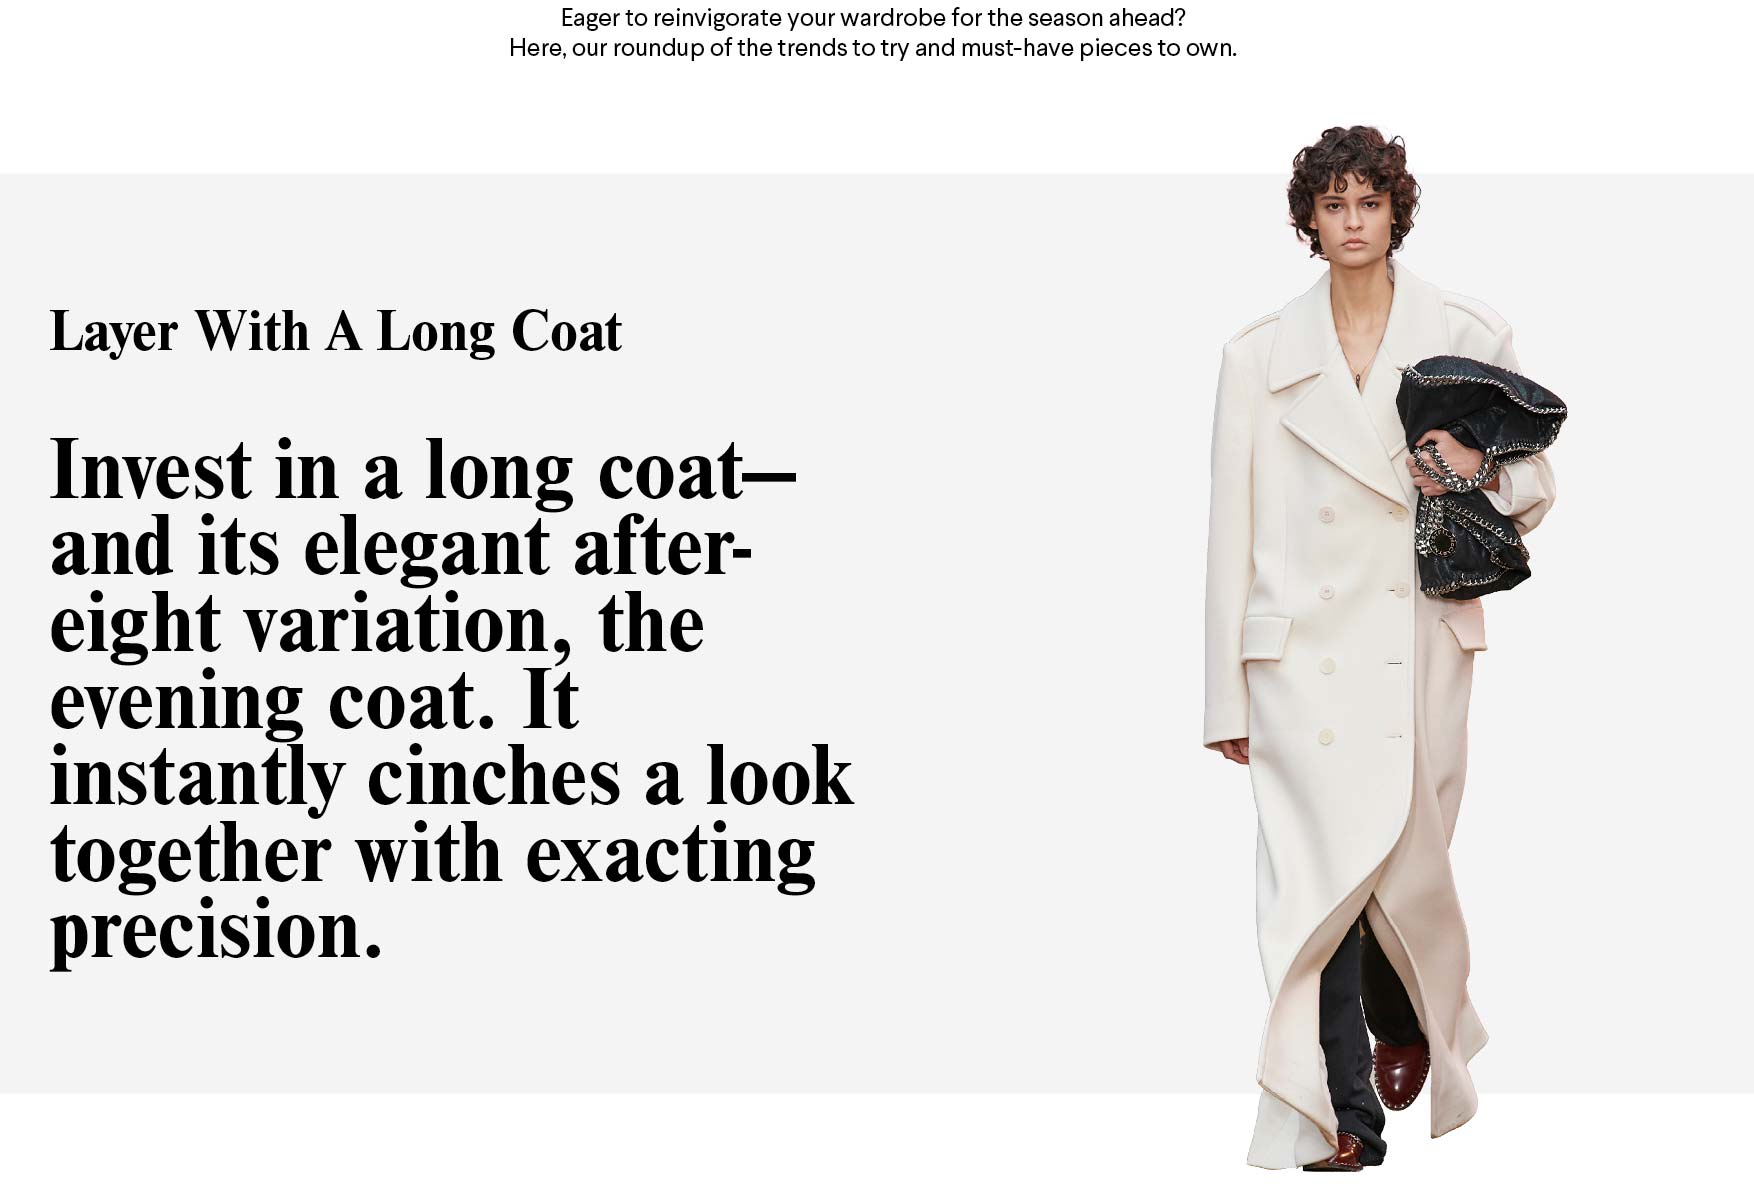 Louis Vuitton Black Uniform Suit Blazer Jacket Gold Buttons Size 32 XS  Womens